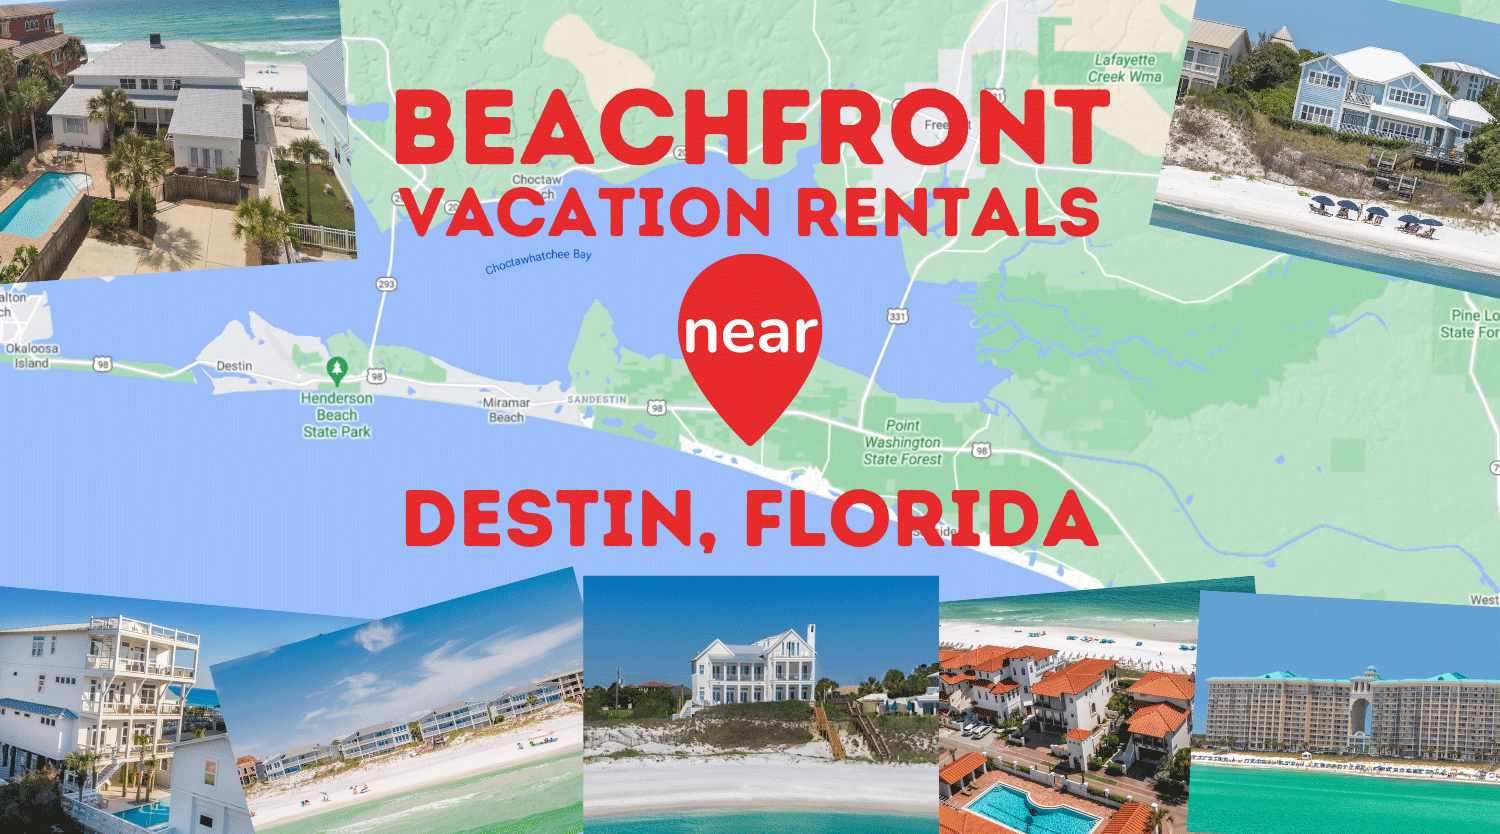  10 Beachfront Vacation Rentals near Destin